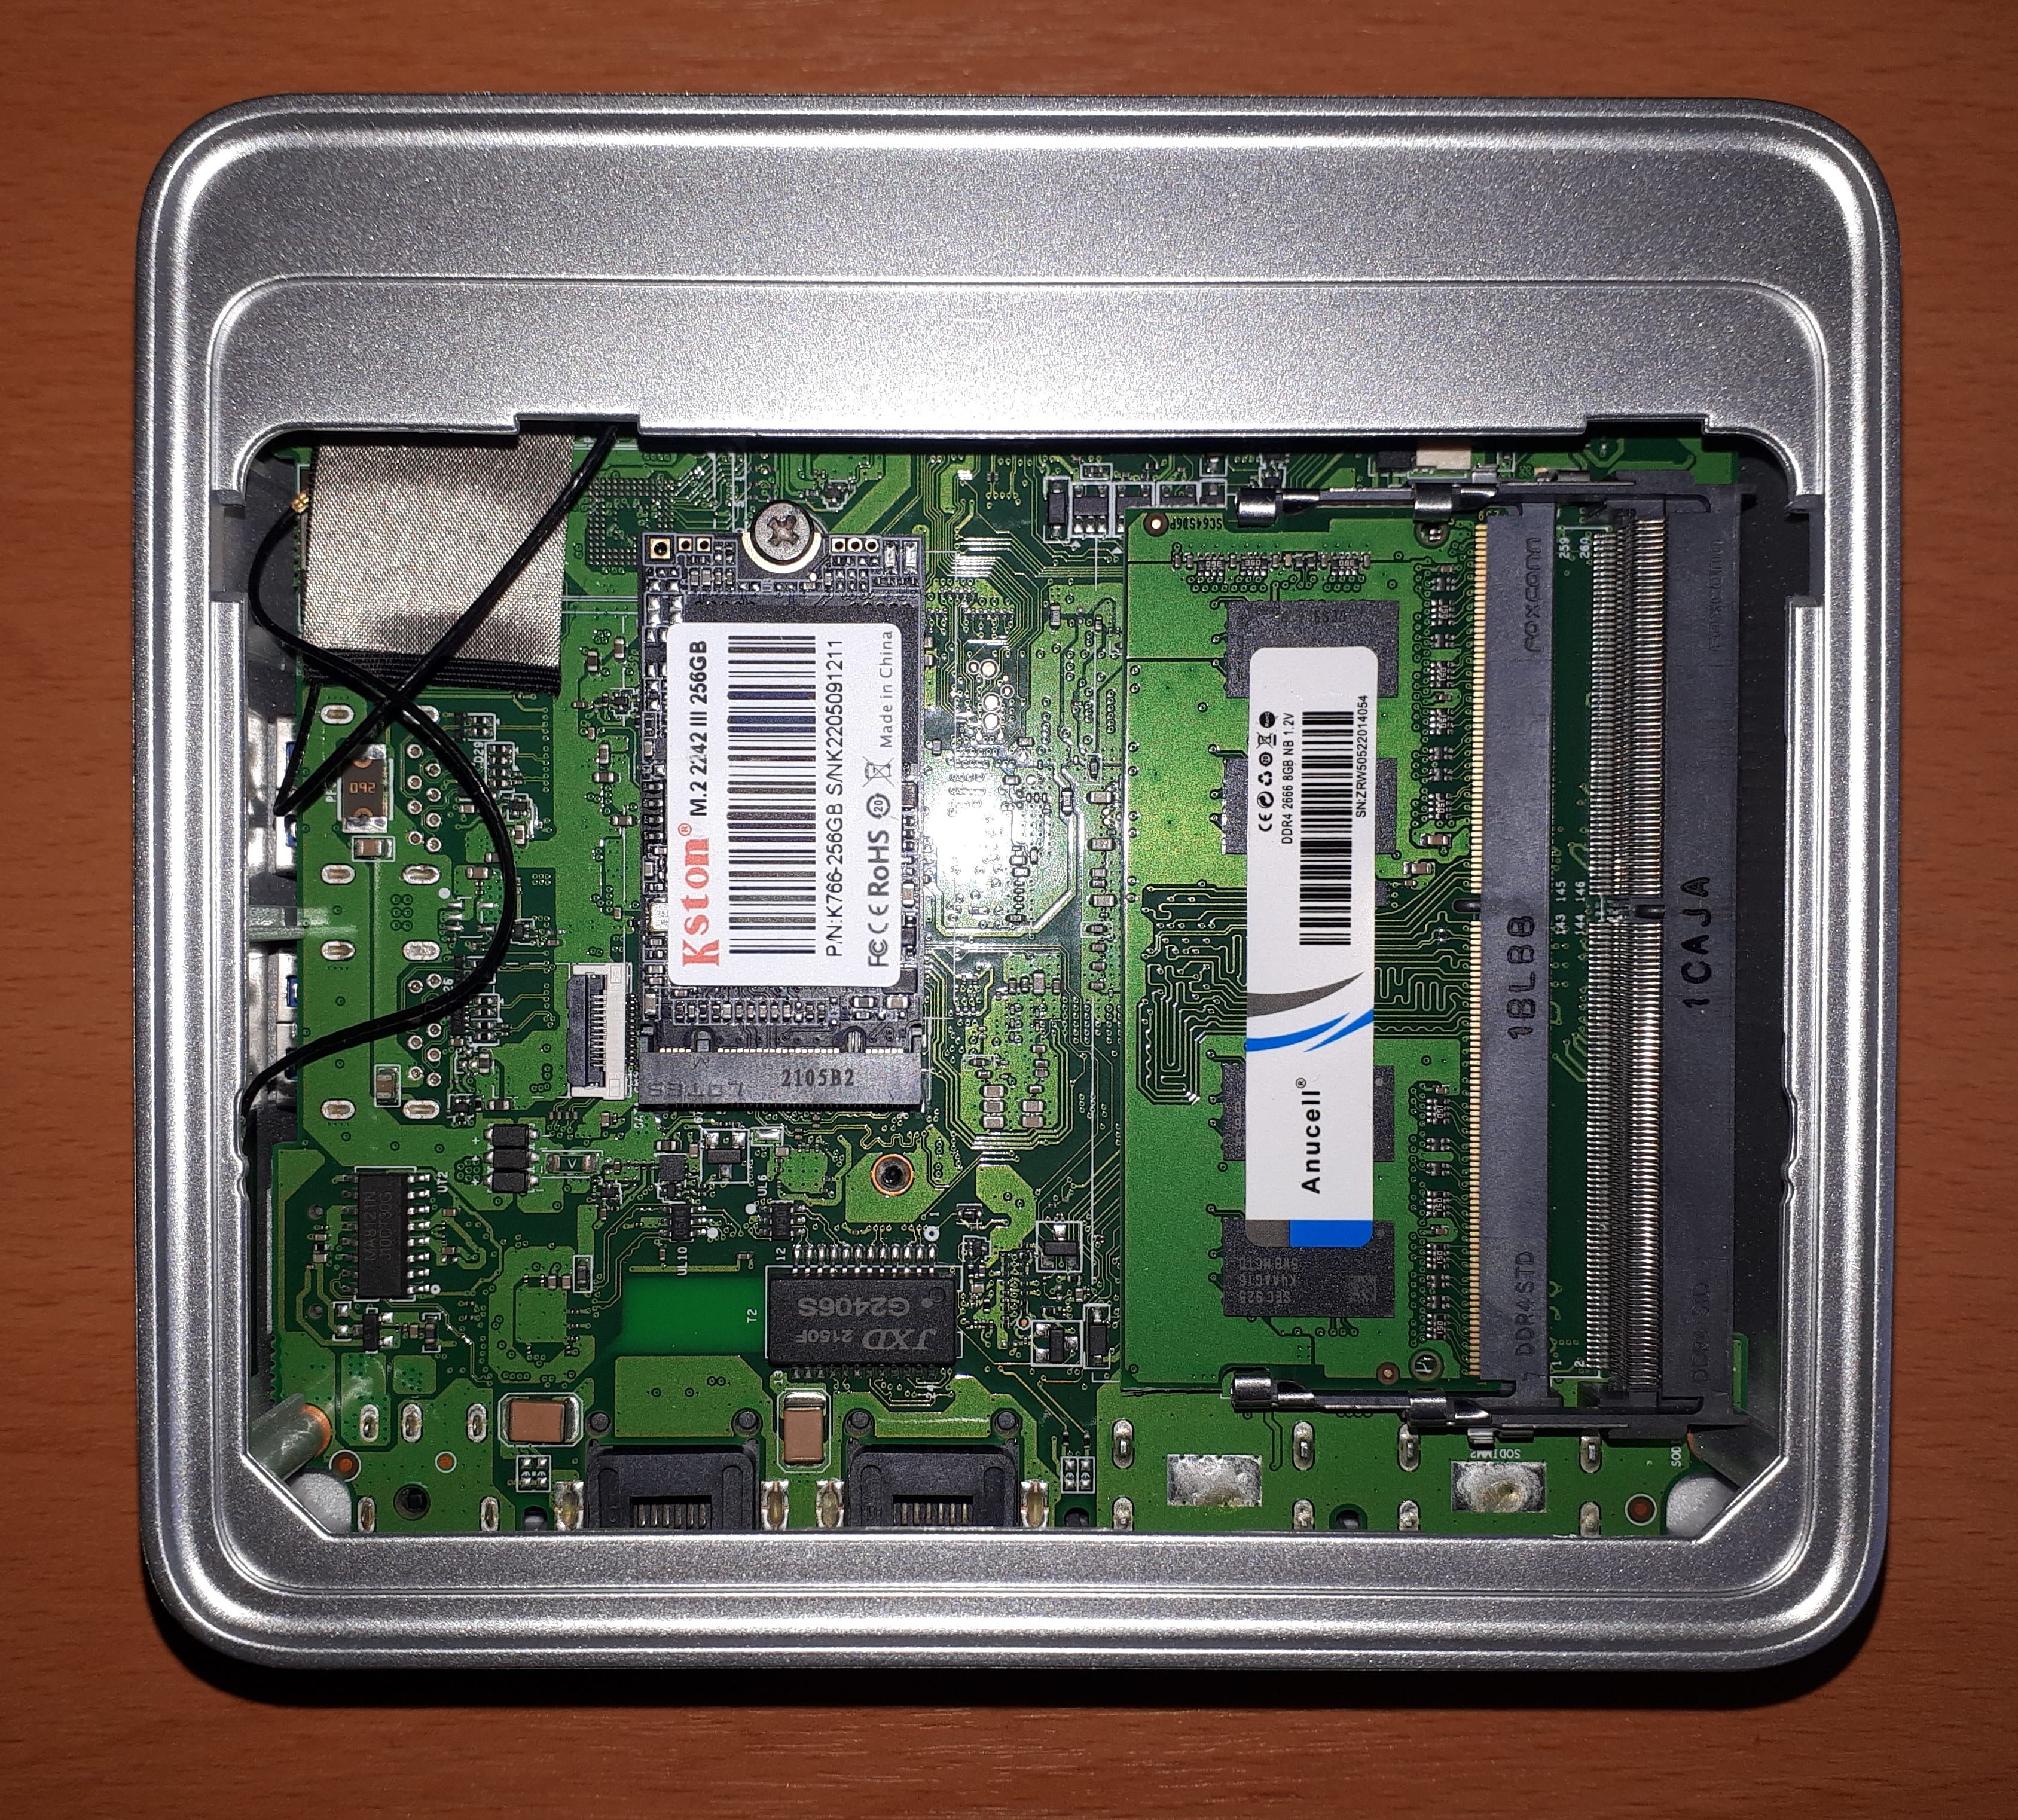 BMAX B3 plus(N5095/SATA SSD 480GB換装)